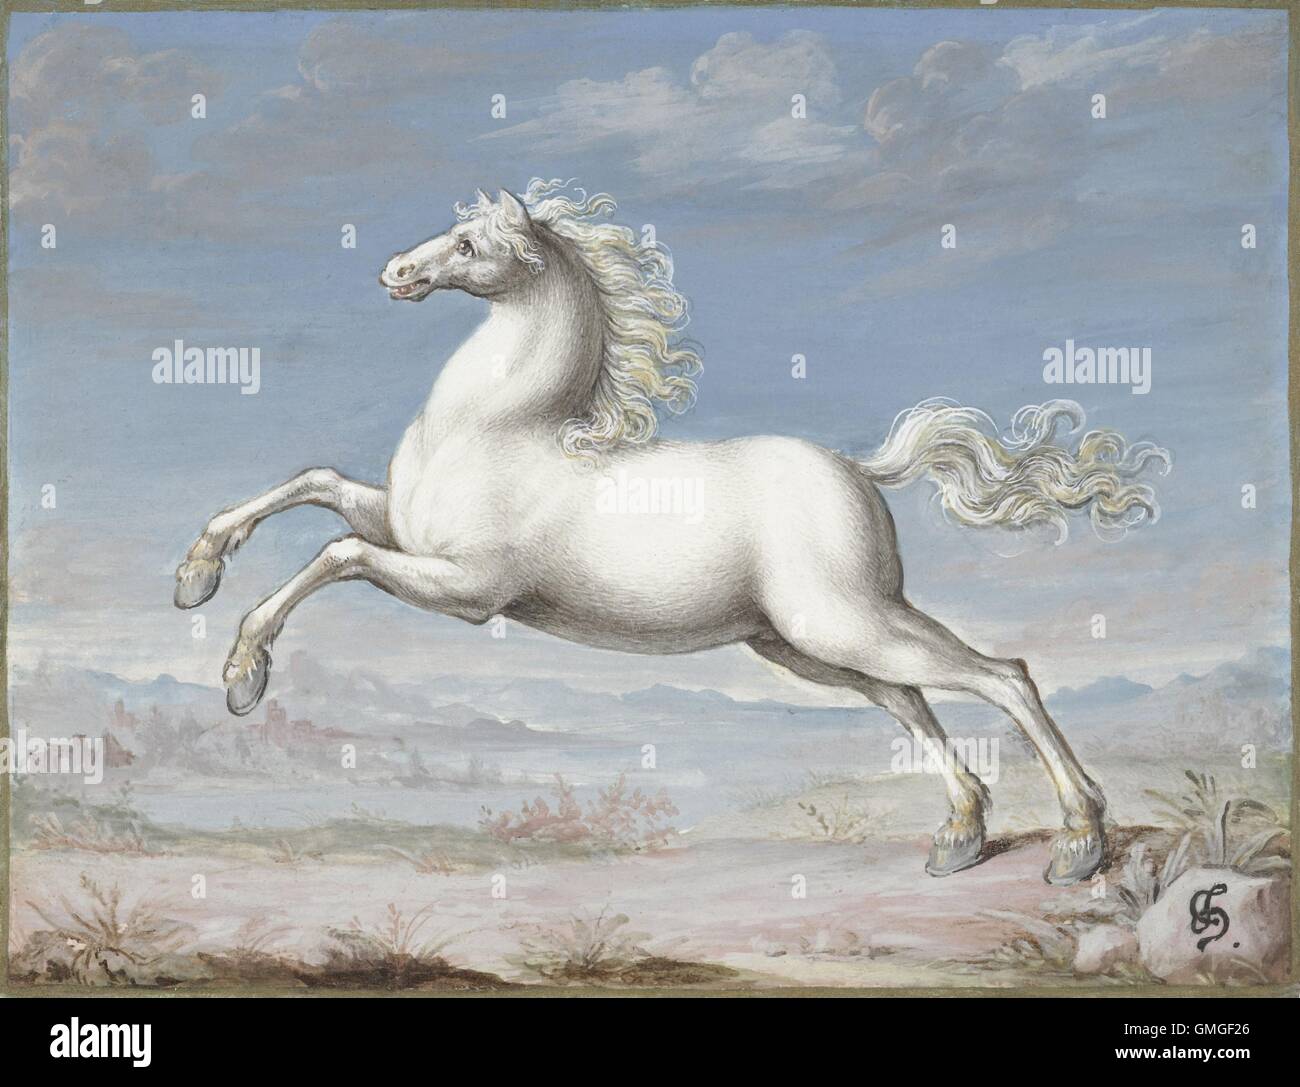 Weißes Pferd, Joris Hoefnagel, 1560-99, flämische Malerei, Gouache auf Pergament. Hoefnagel war der letzte wichtige flämische Manuskript Illuminator. Er schuf auch eine mehrbändige Buch der Naturgeschichte Miniaturen (BSLOC 2016 6 322) Stockfoto